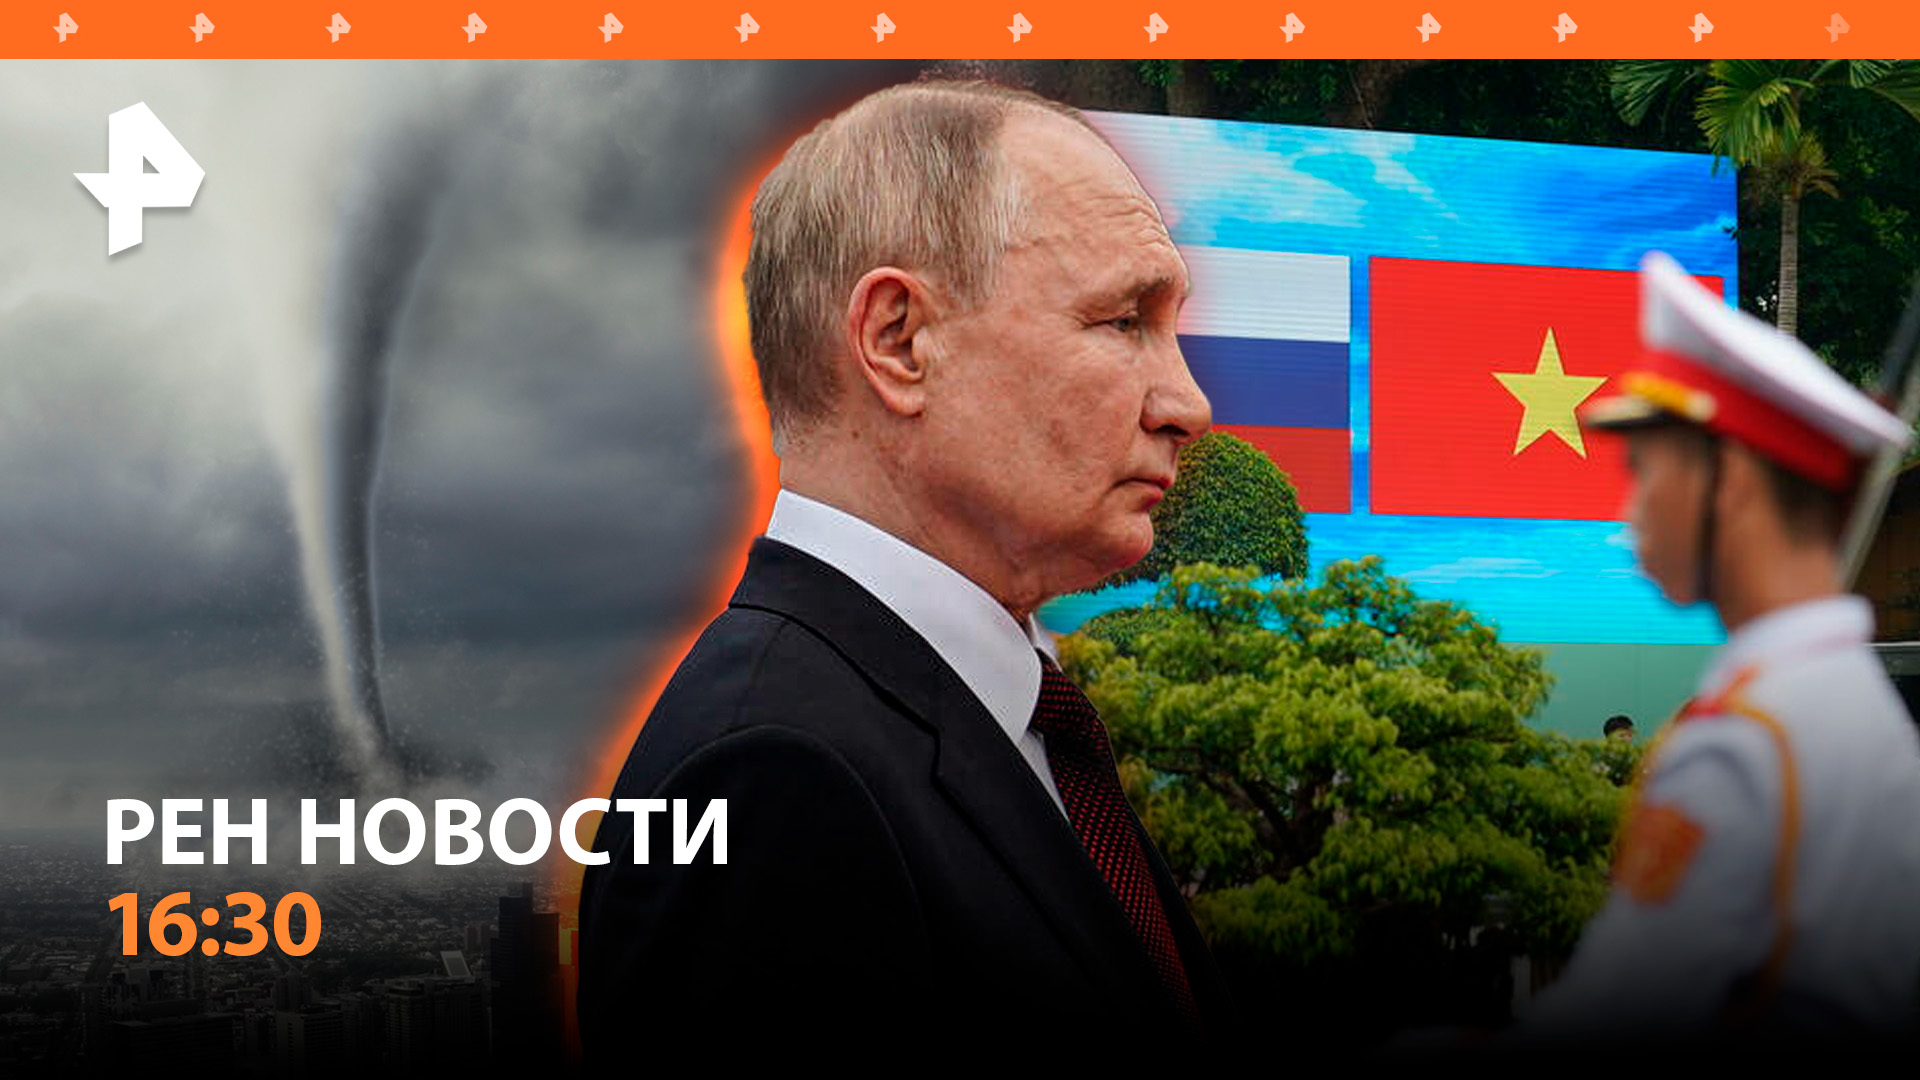 Мегашторм в Москве — два человека погибли / Путин во Вьетнаме раздражает НАТО / РЕН Новости 16:30